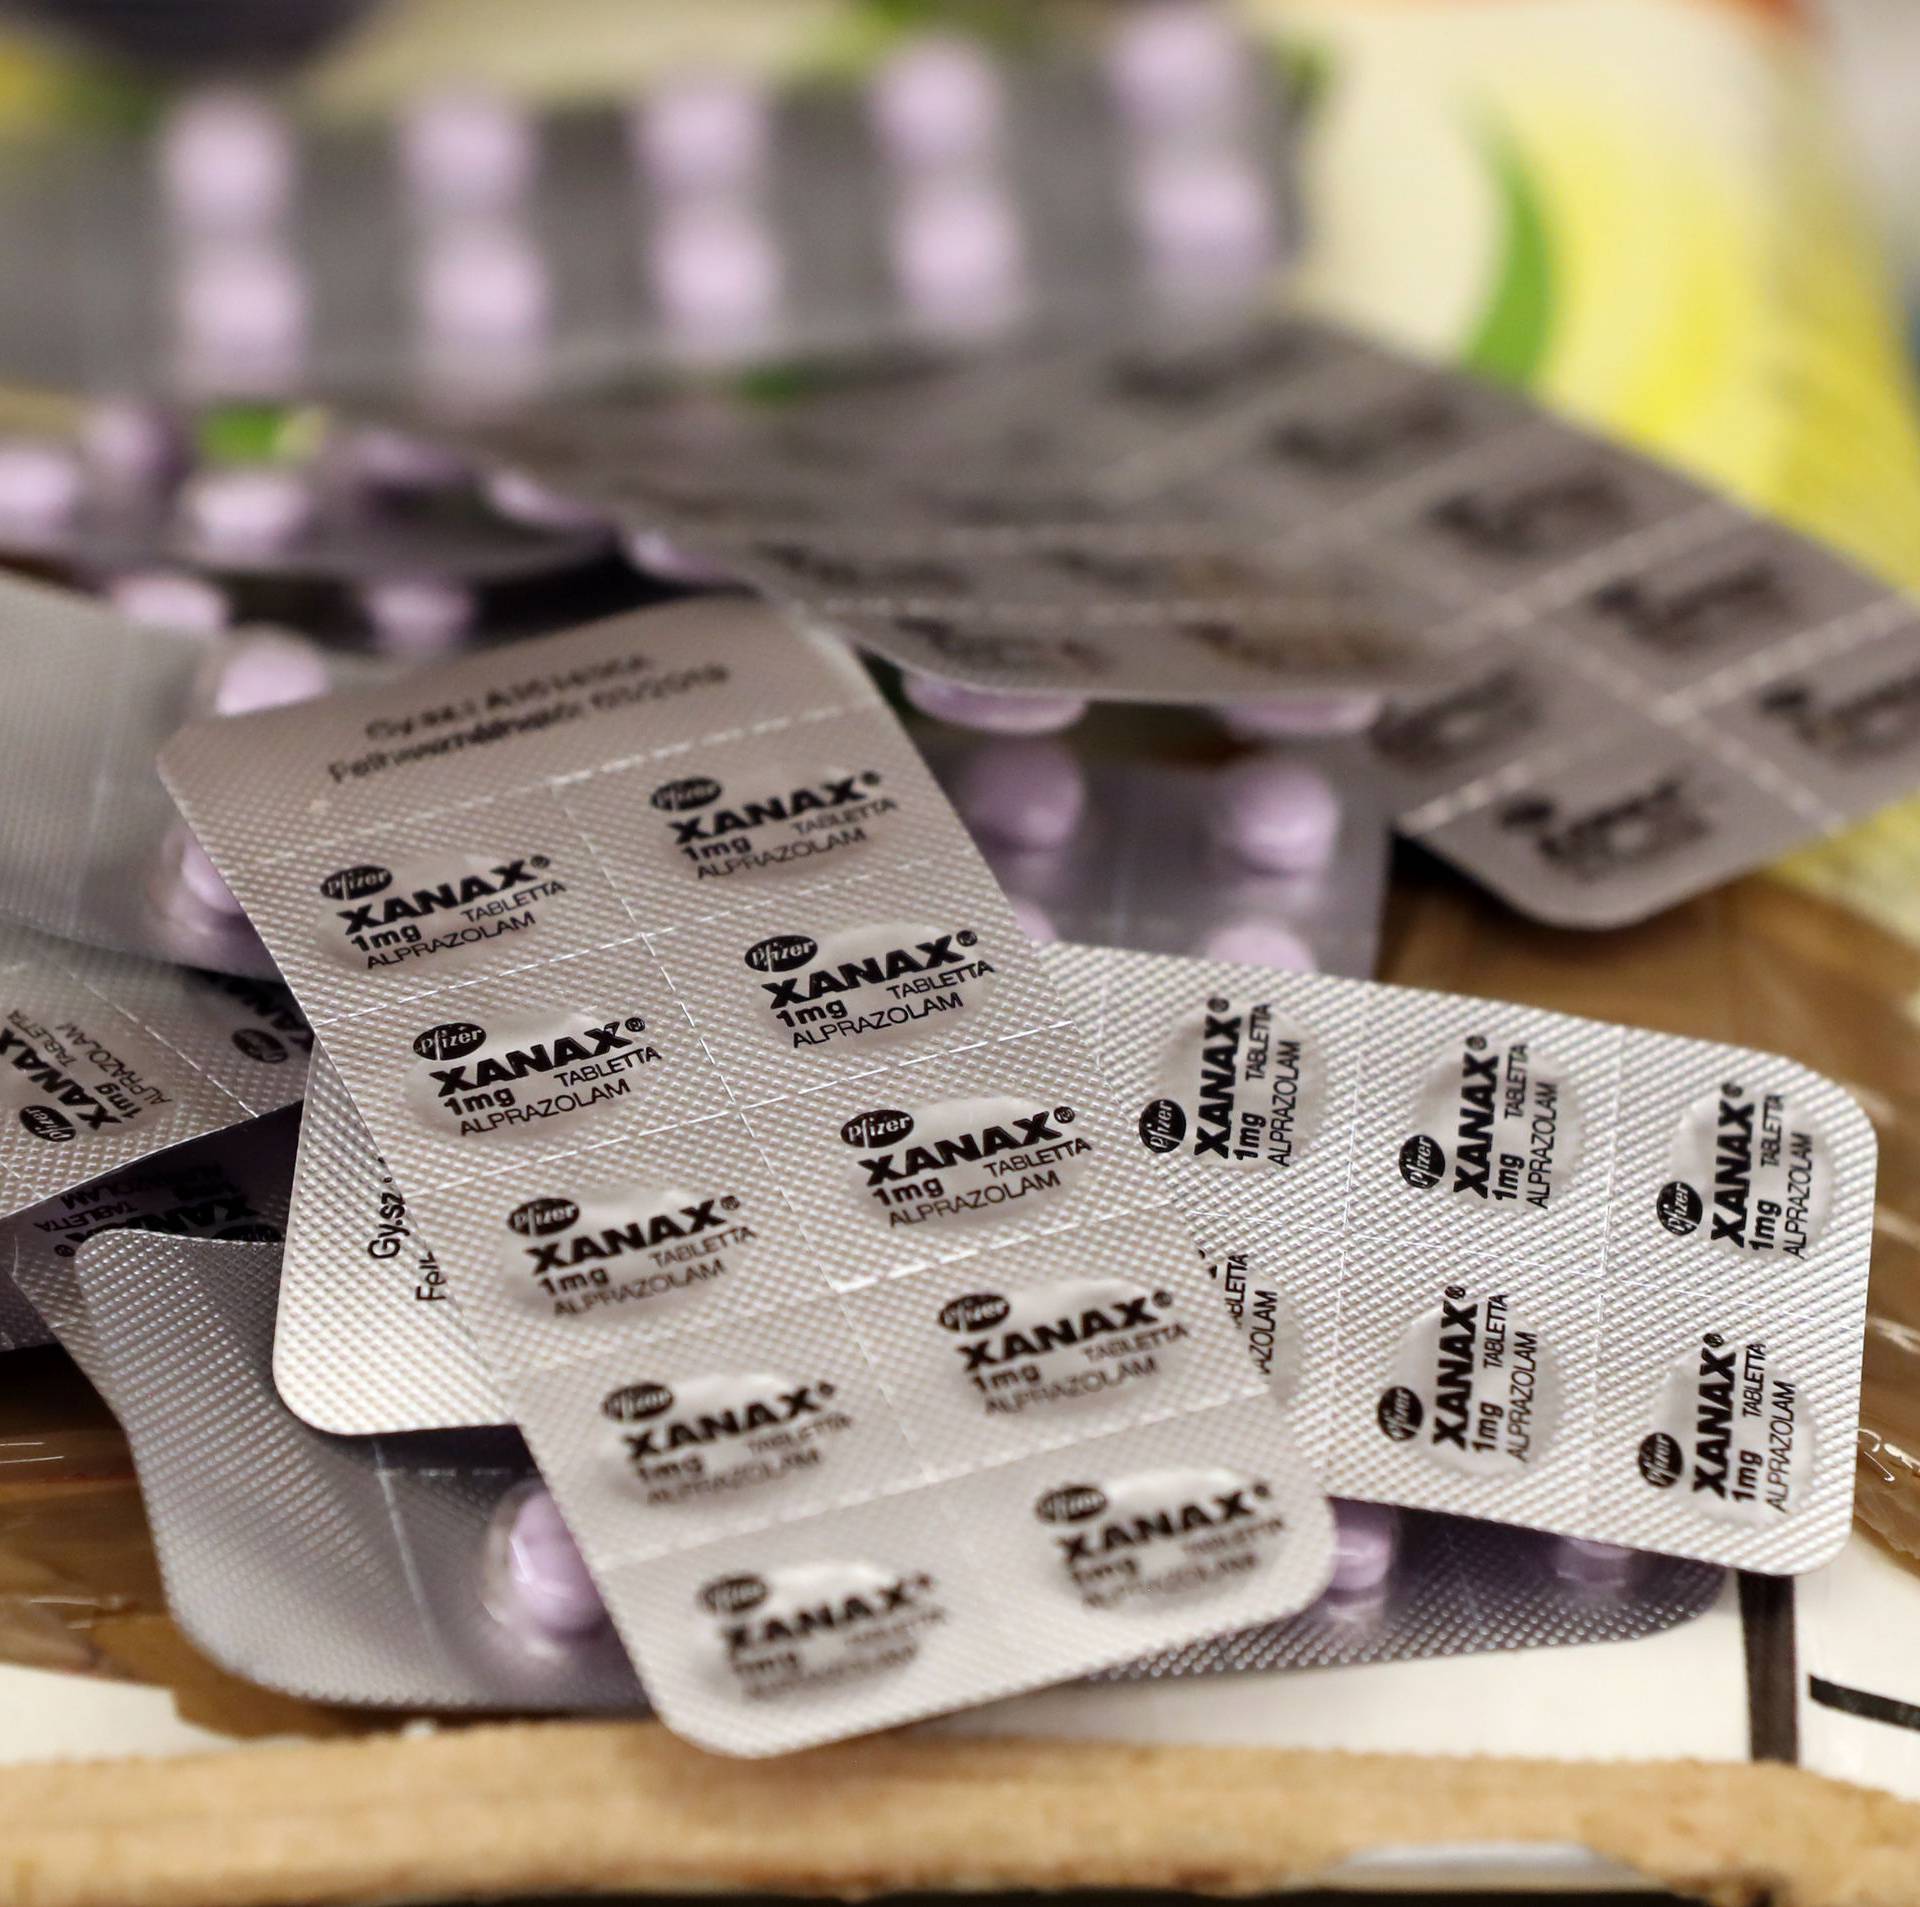 Irish Illegal prescription medicines seized